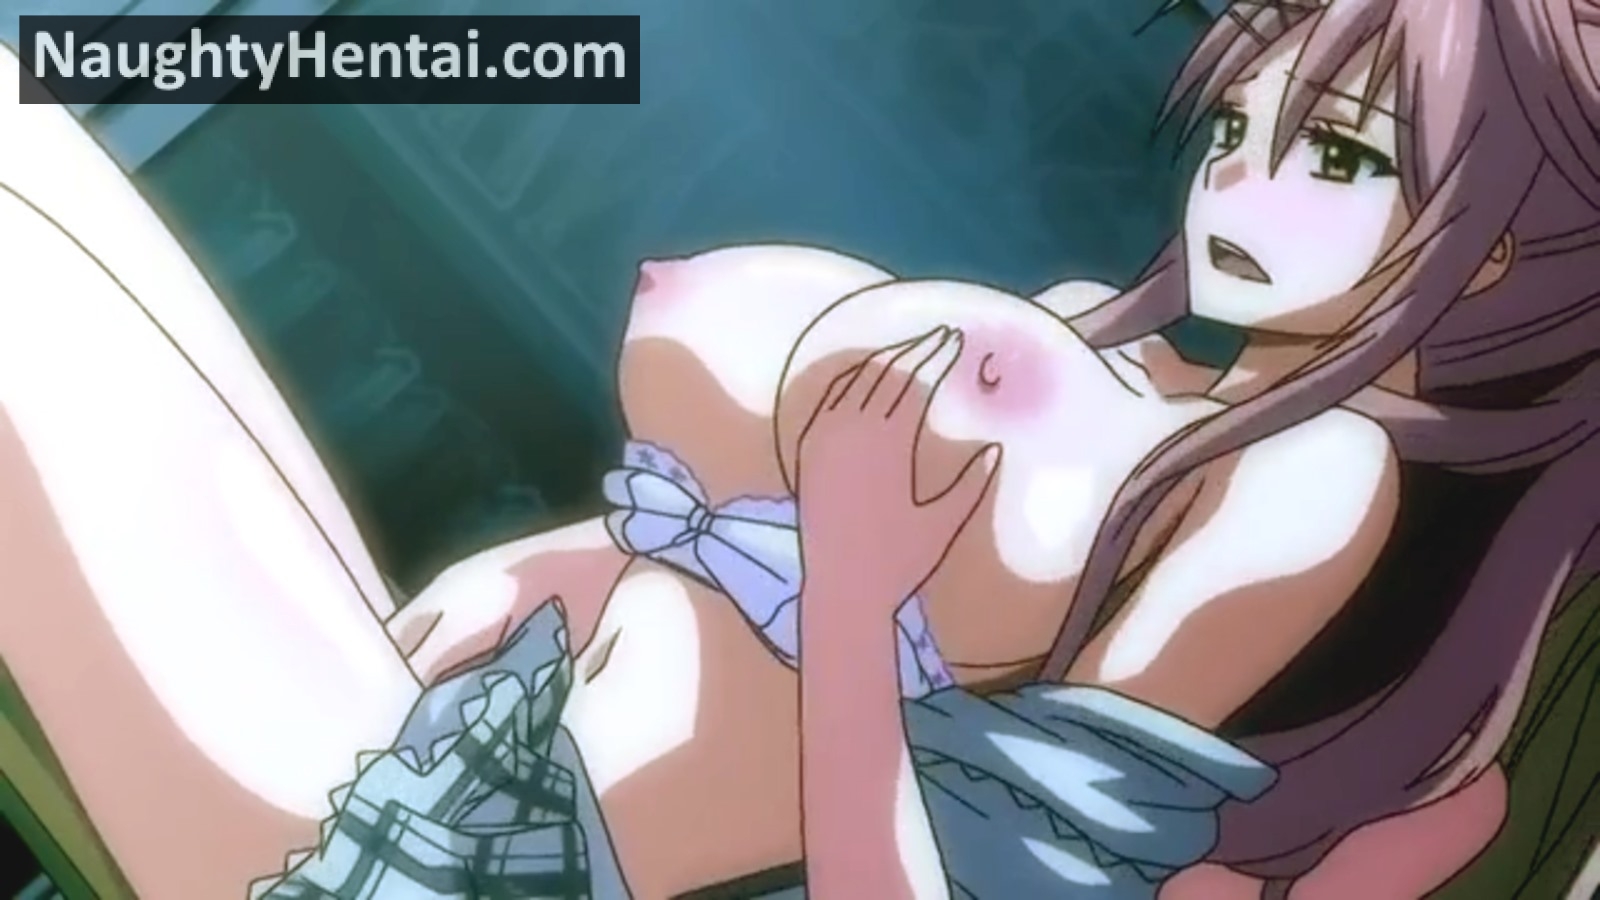 1600px x 900px - Toriko No Kusari Part 2 | Naughty Hentai Rape Schoolgirl Movie